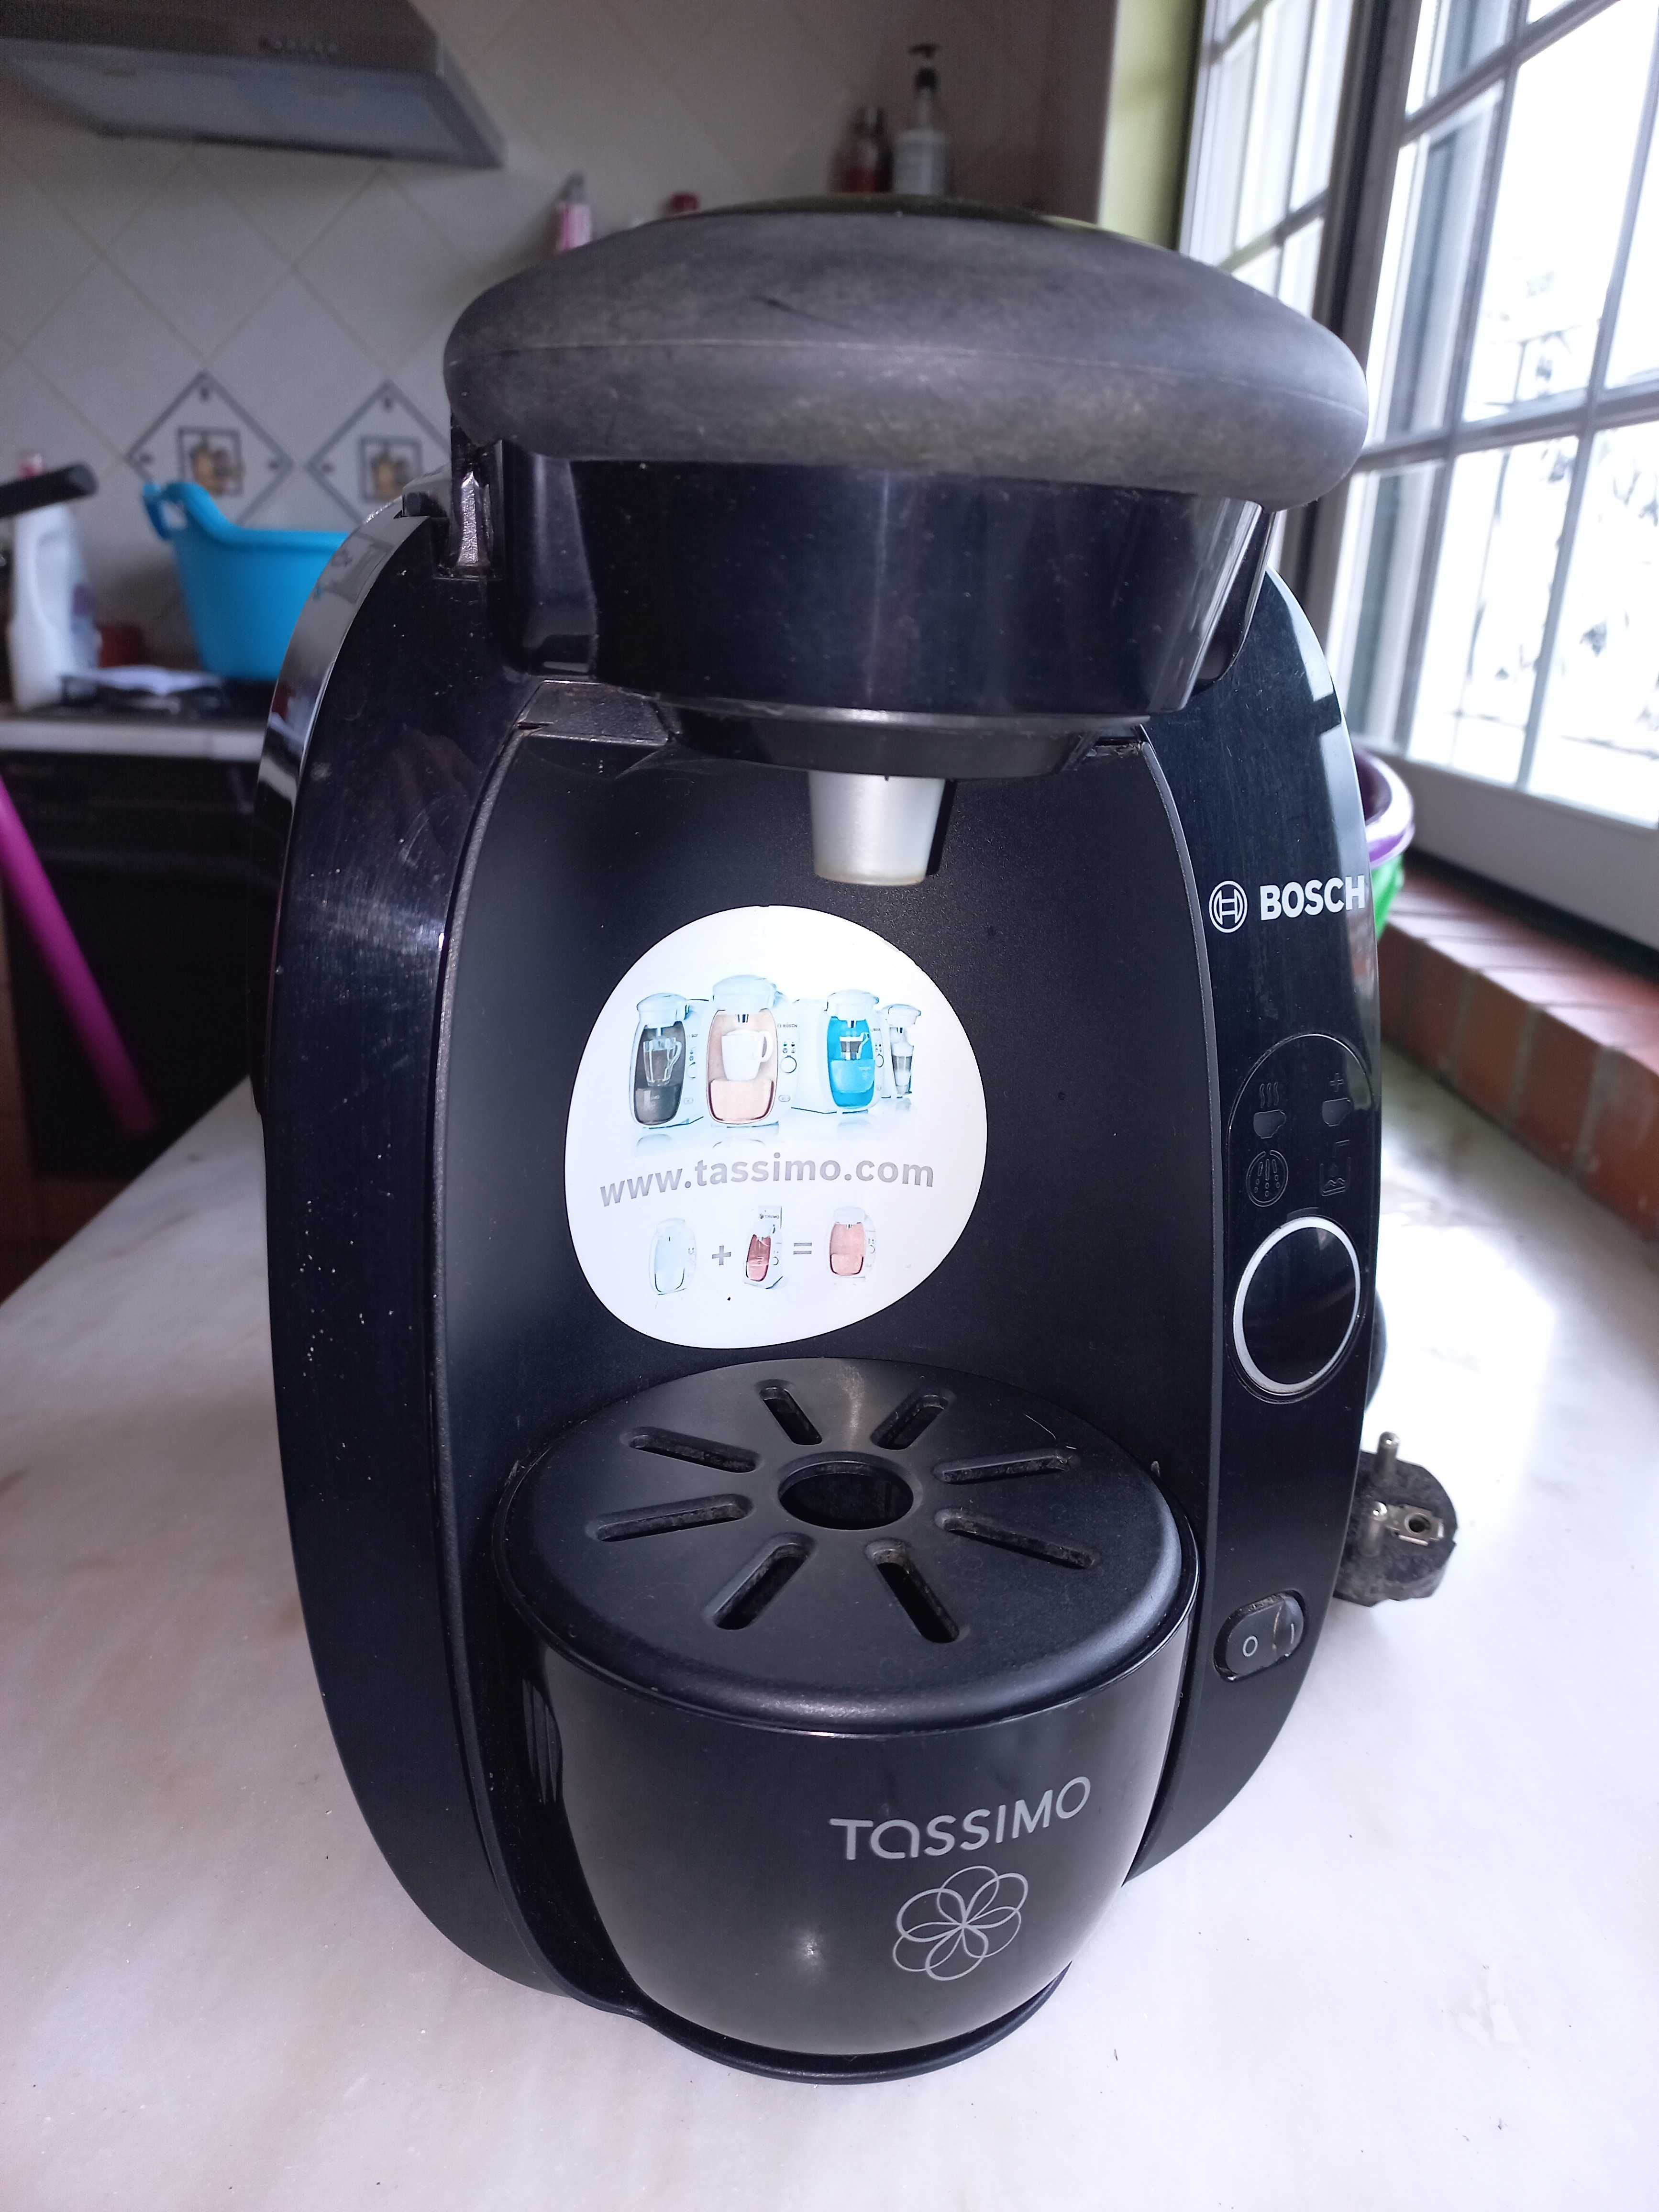 Maquina de cafe bosch Tassimo